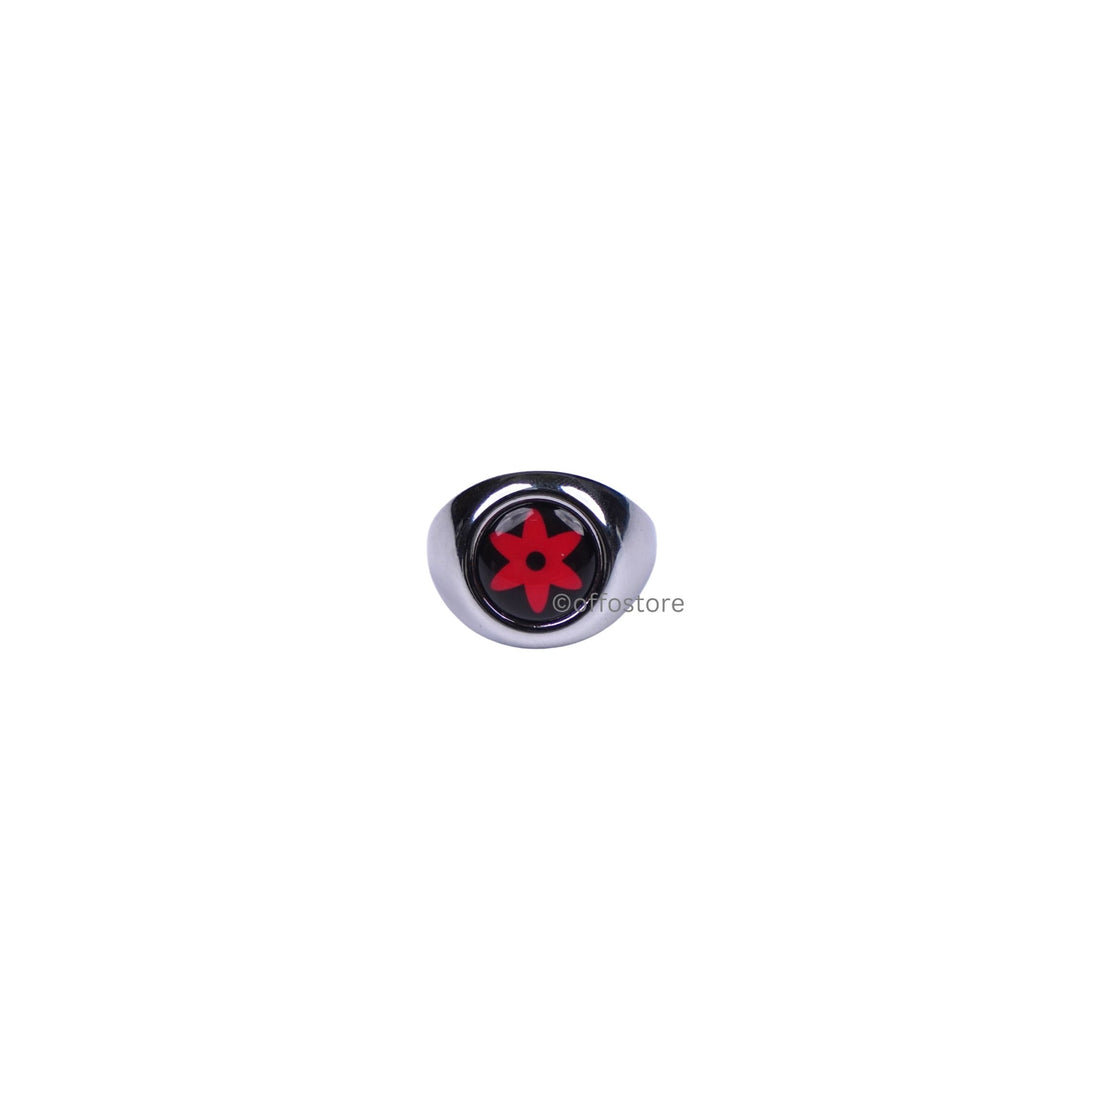 Naruto Anime Sasuke's Mangekyou Sharingan Ring